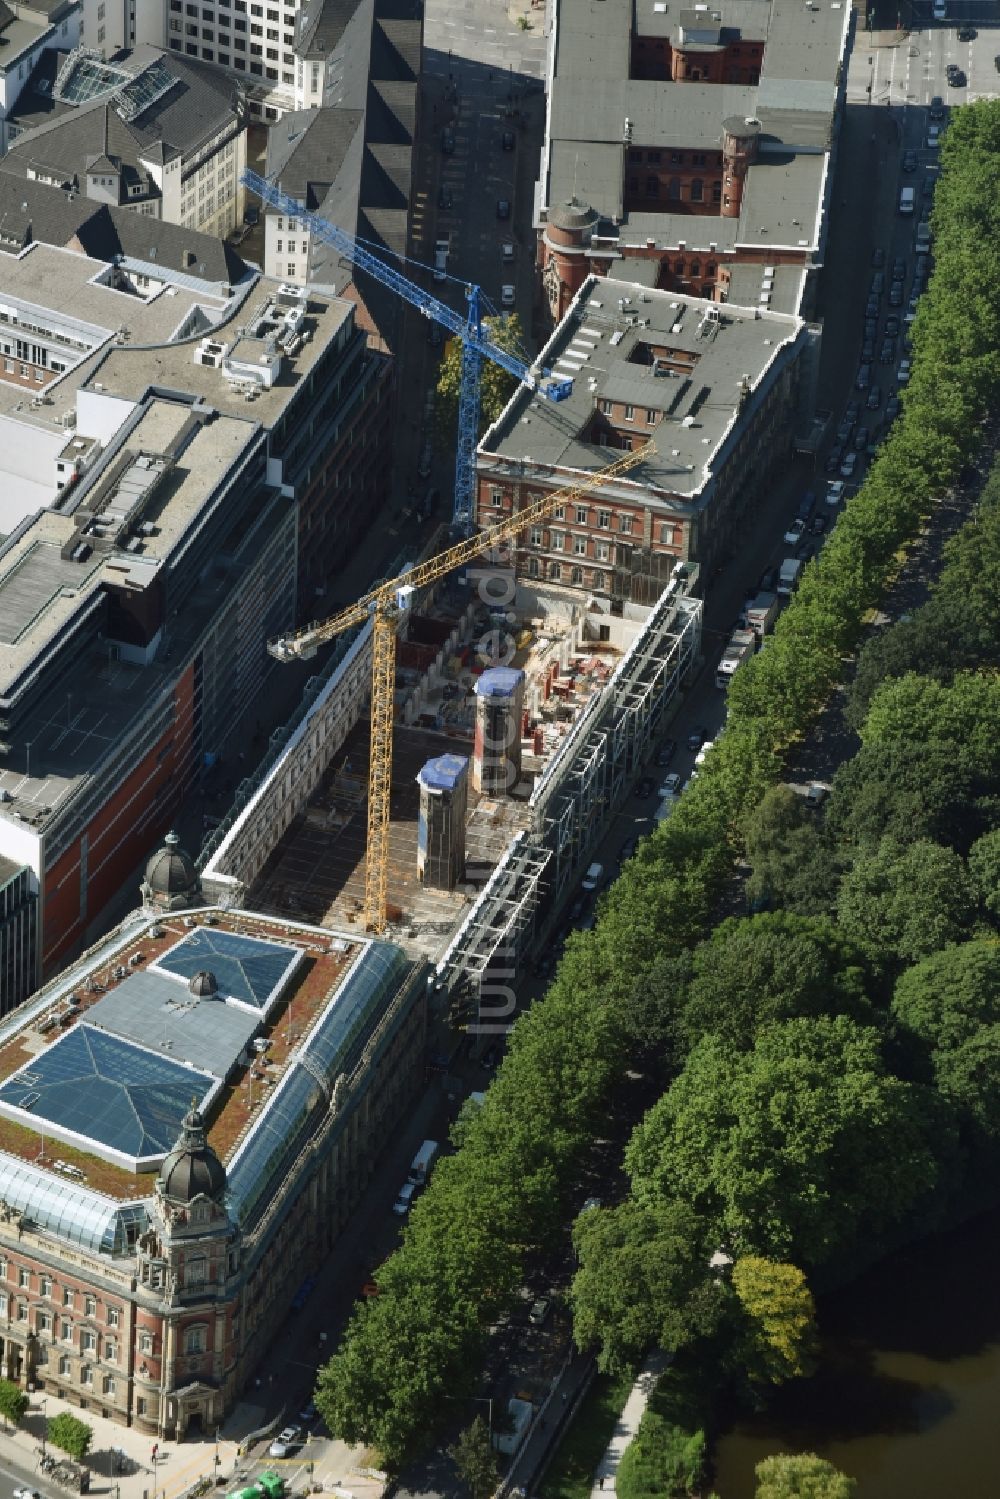 Hamburg aus der Vogelperspektive: Baustelle zur Revitalisierung und Umbau des Gebäudekomplex Alte Post am Stephansplatz in Hamburg